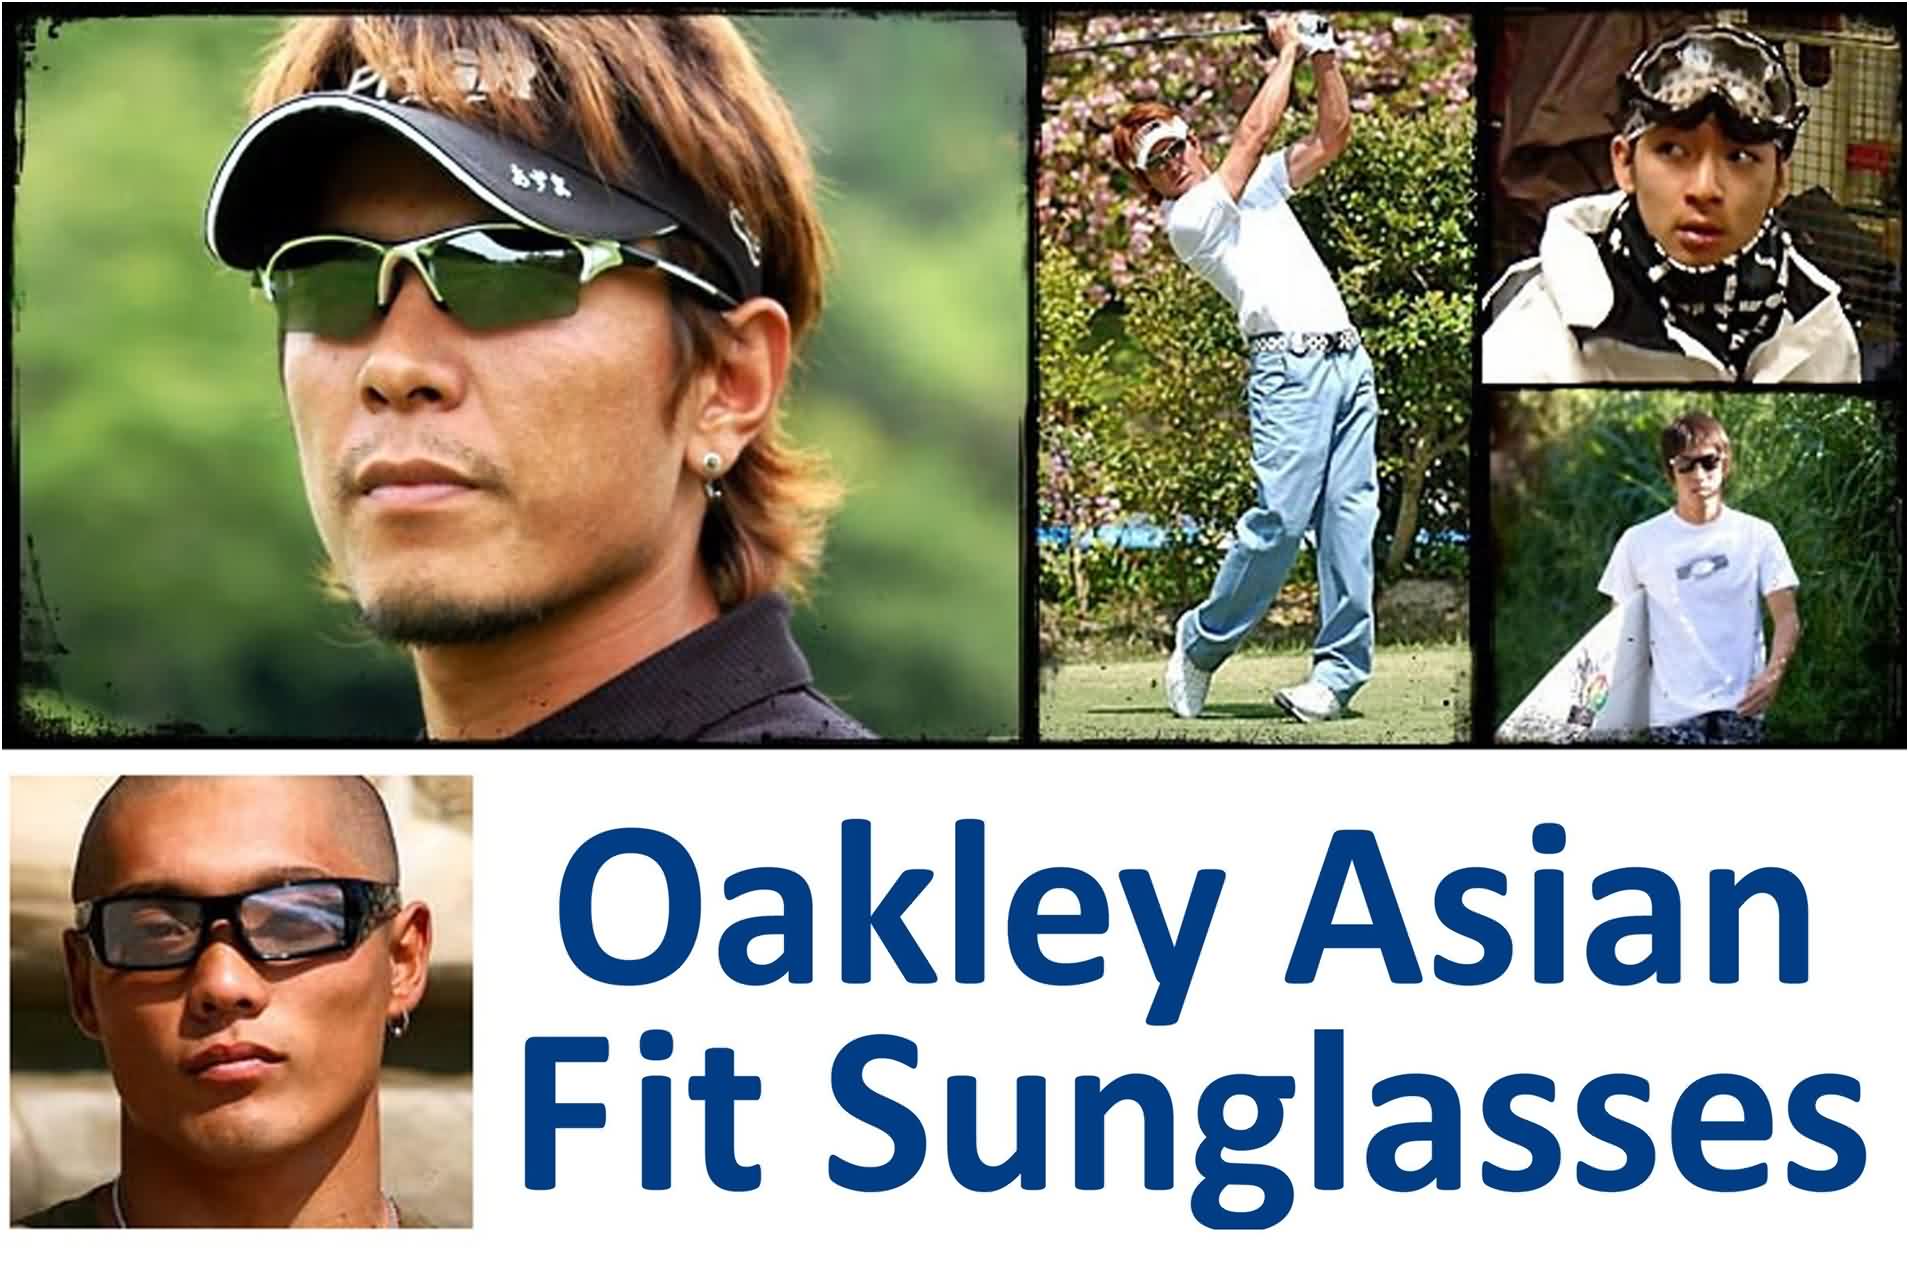 Oakley Asian Fit Sunglasses Guide Lookbook